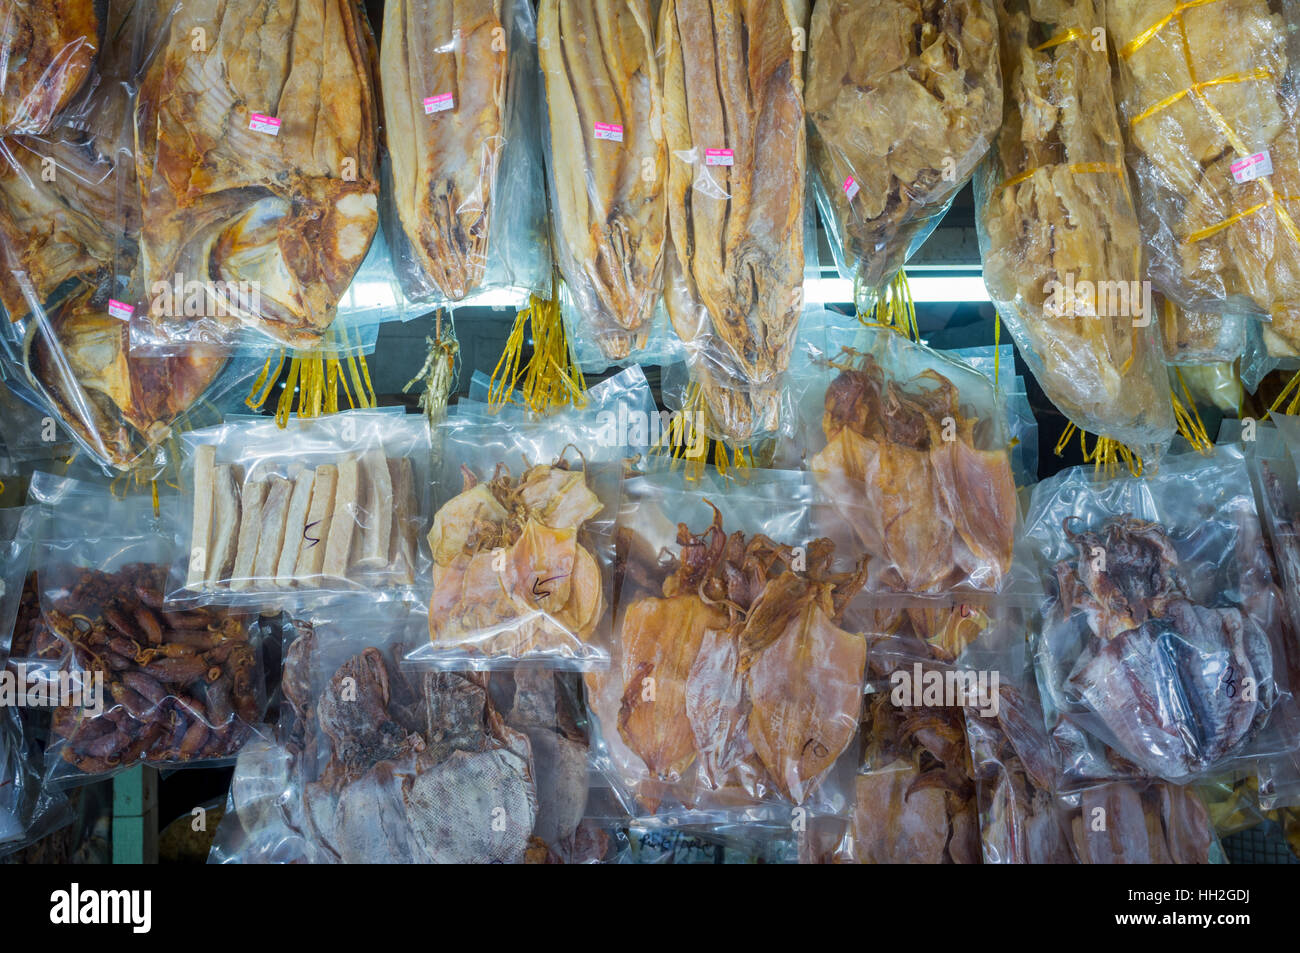 Dried fish on sale in a market in Kota Kinabalu, Malaysian Borneo Stock Photo